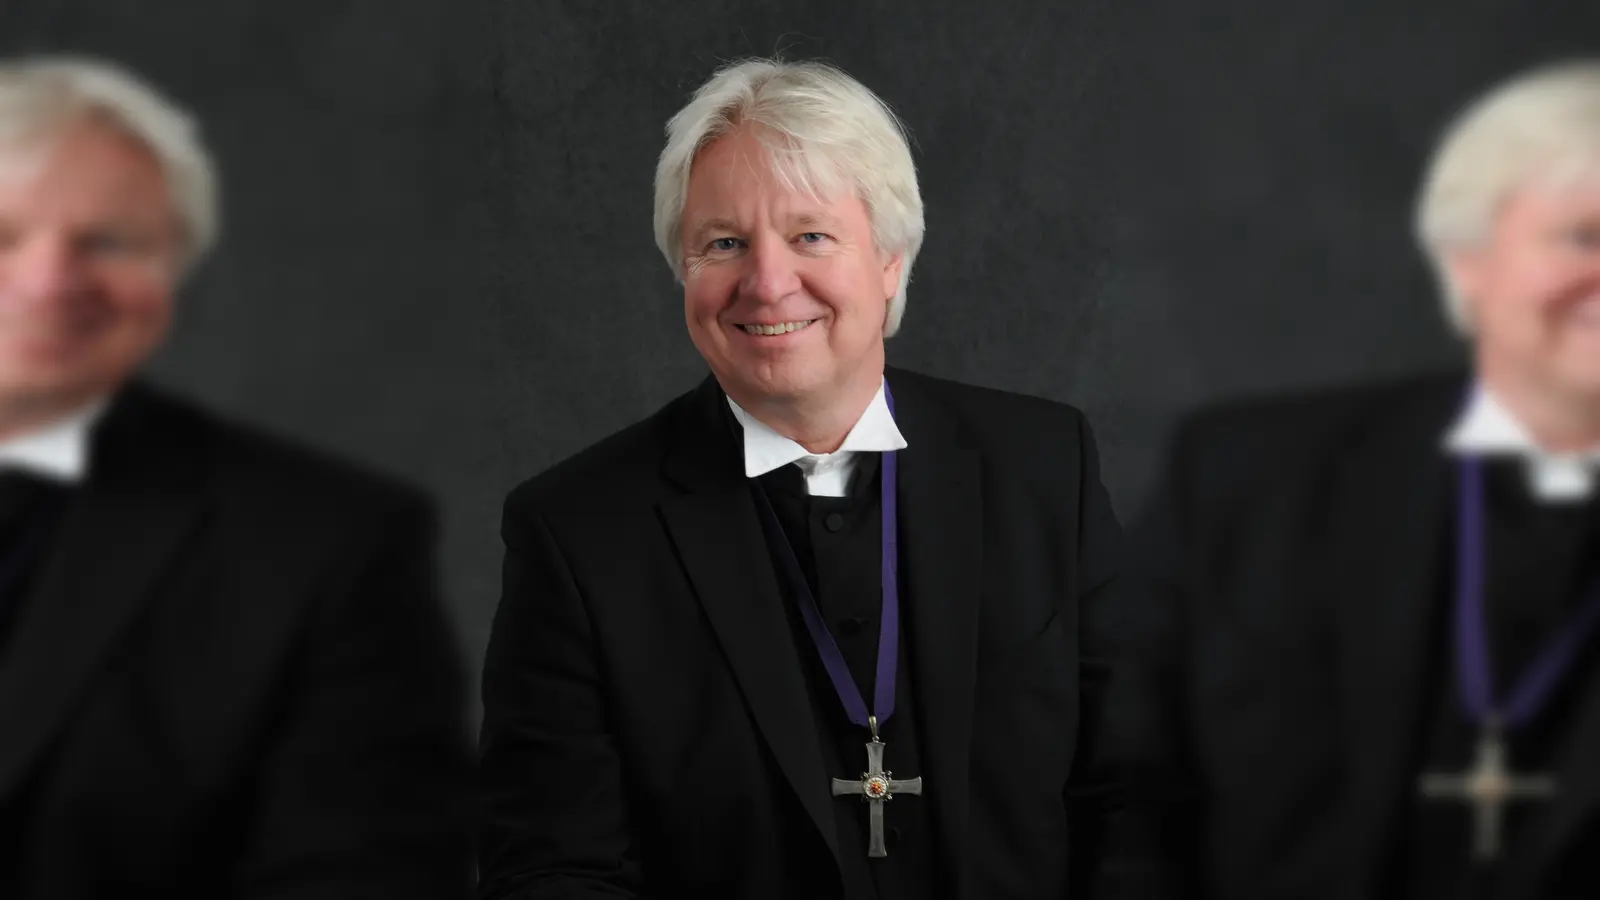 Am 24. Februar wird Landesbischof Karl-Hinrich Manzke in einem Festgottesdient aus seinem Amt verabschiedet. Dabei wird unter anderem Ministerpräsident Stefan Weil ein Grußwort sprechen.  (Foto: privat)